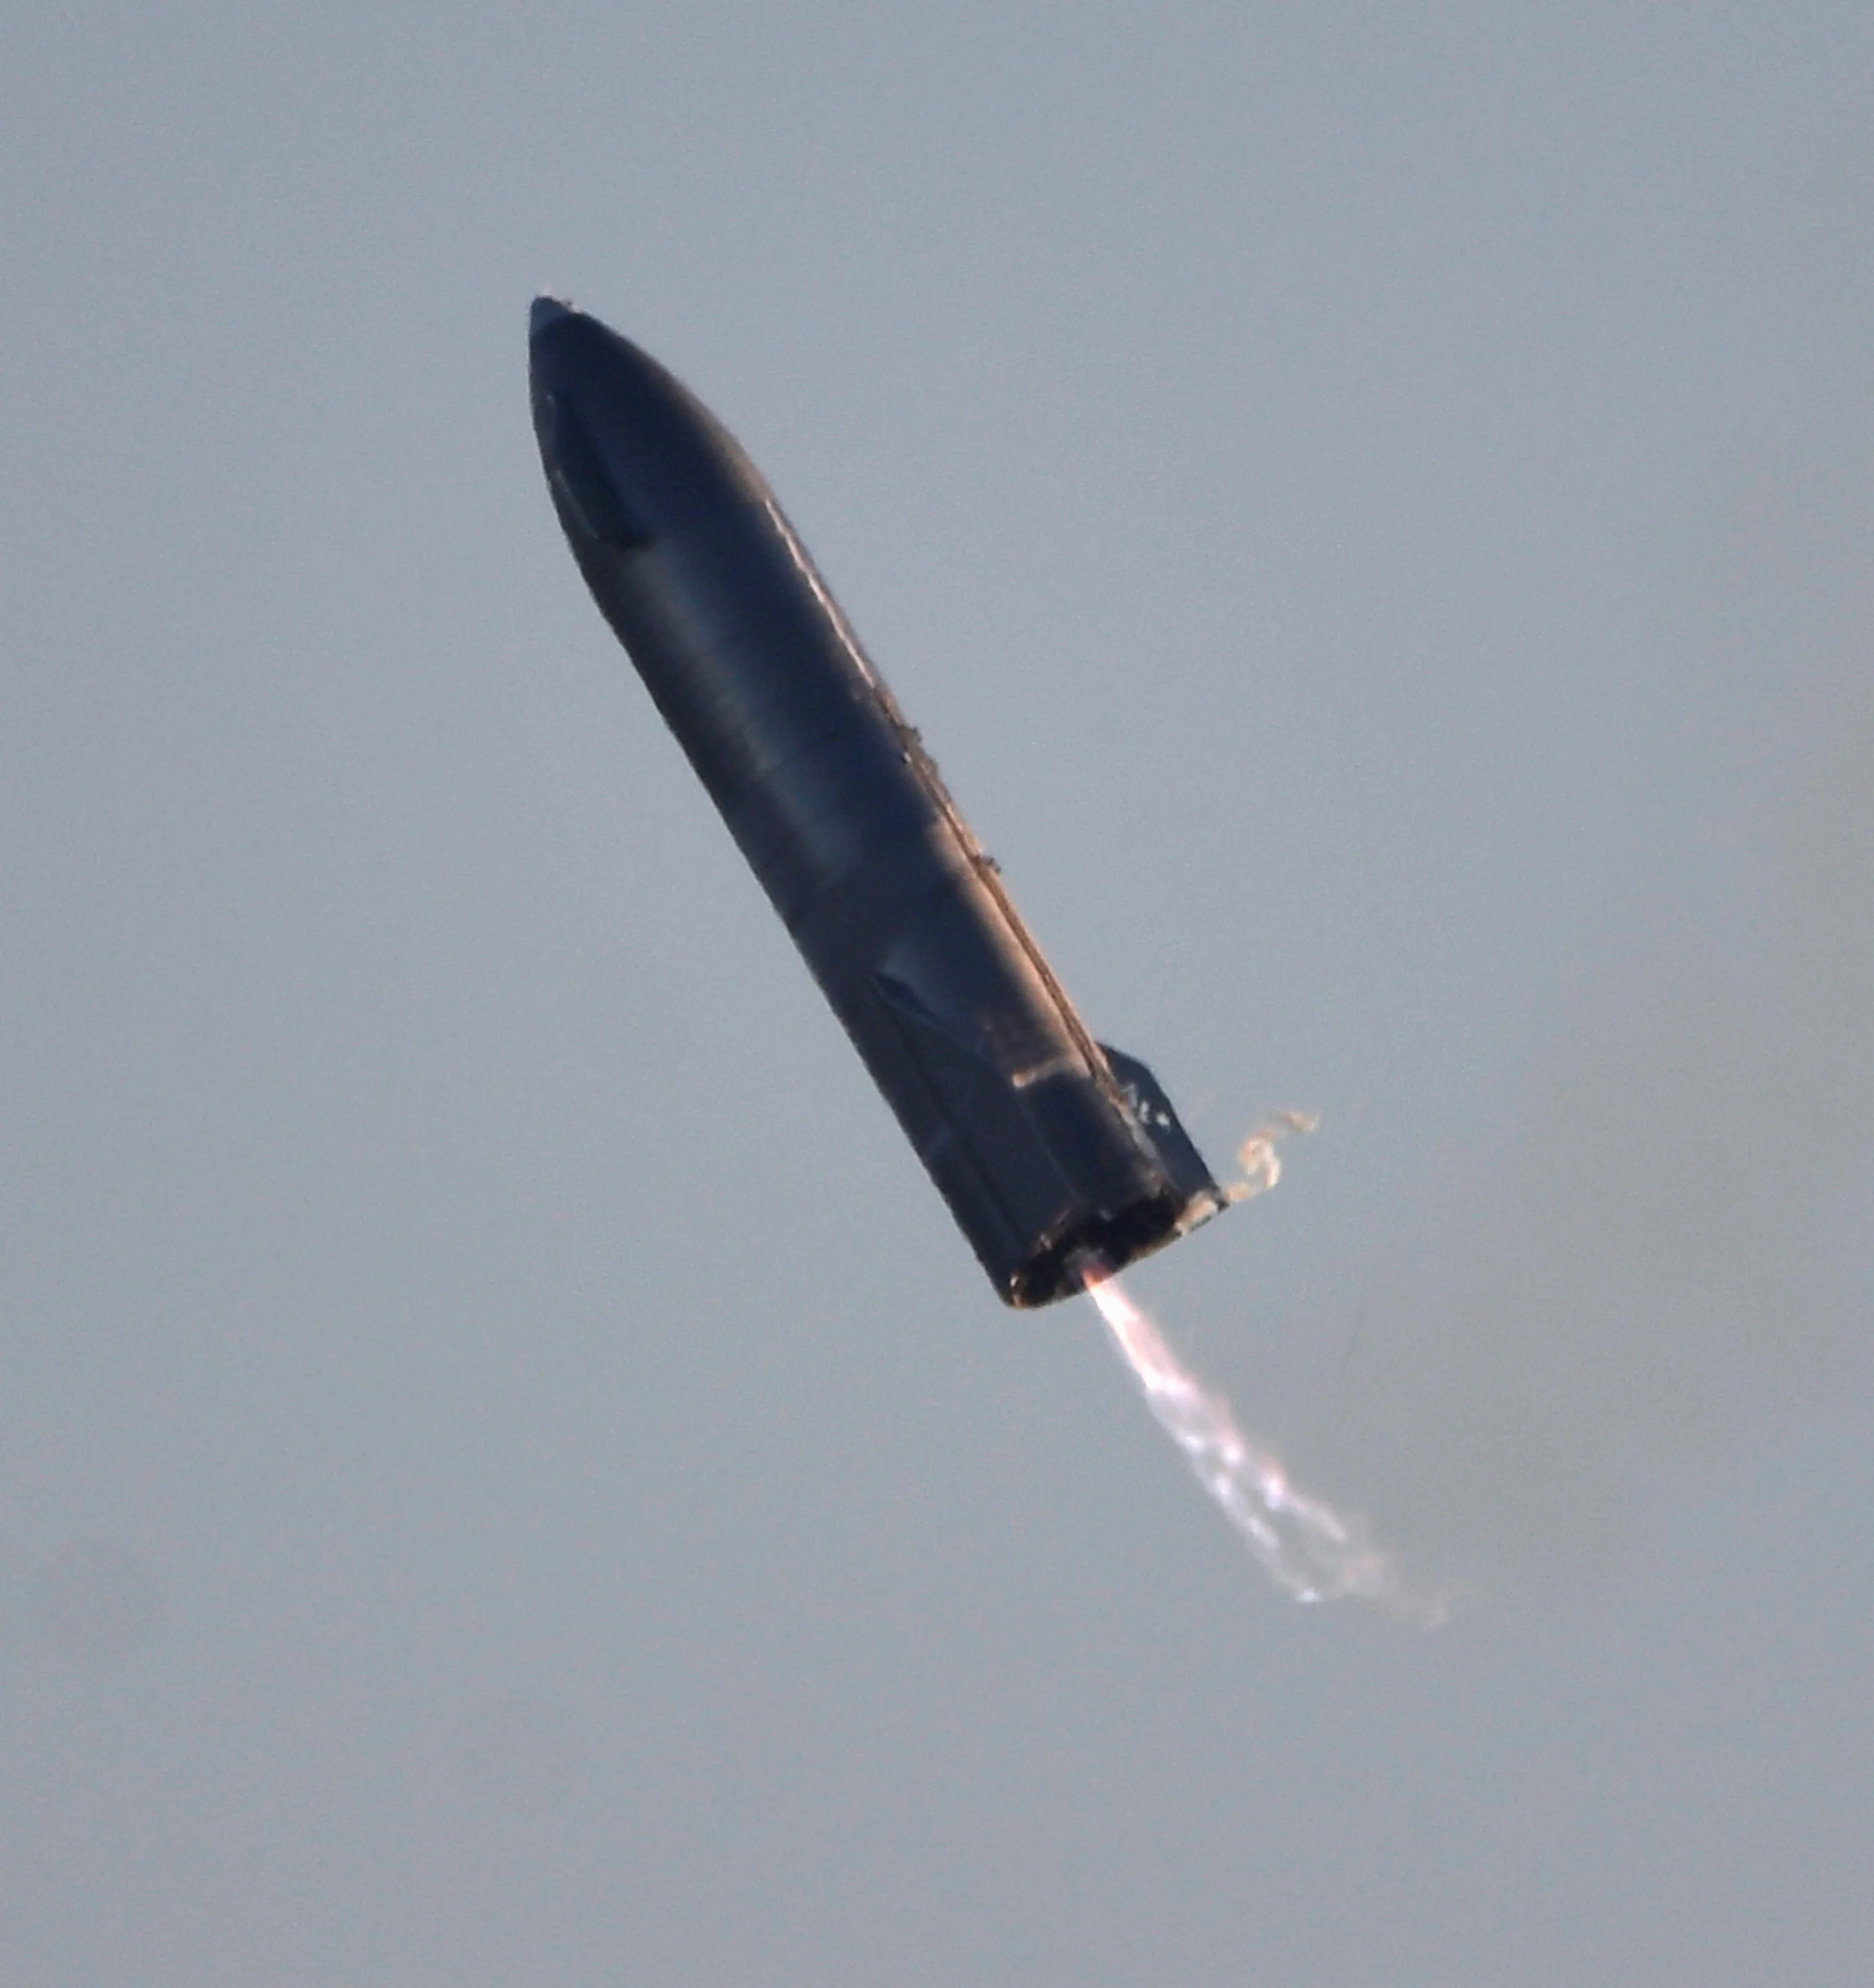 טיל מדגם Starship SN8 באוויר, דקות לפני שהתפוצץ במהלך ניסוי בעת שפגע בקרקע